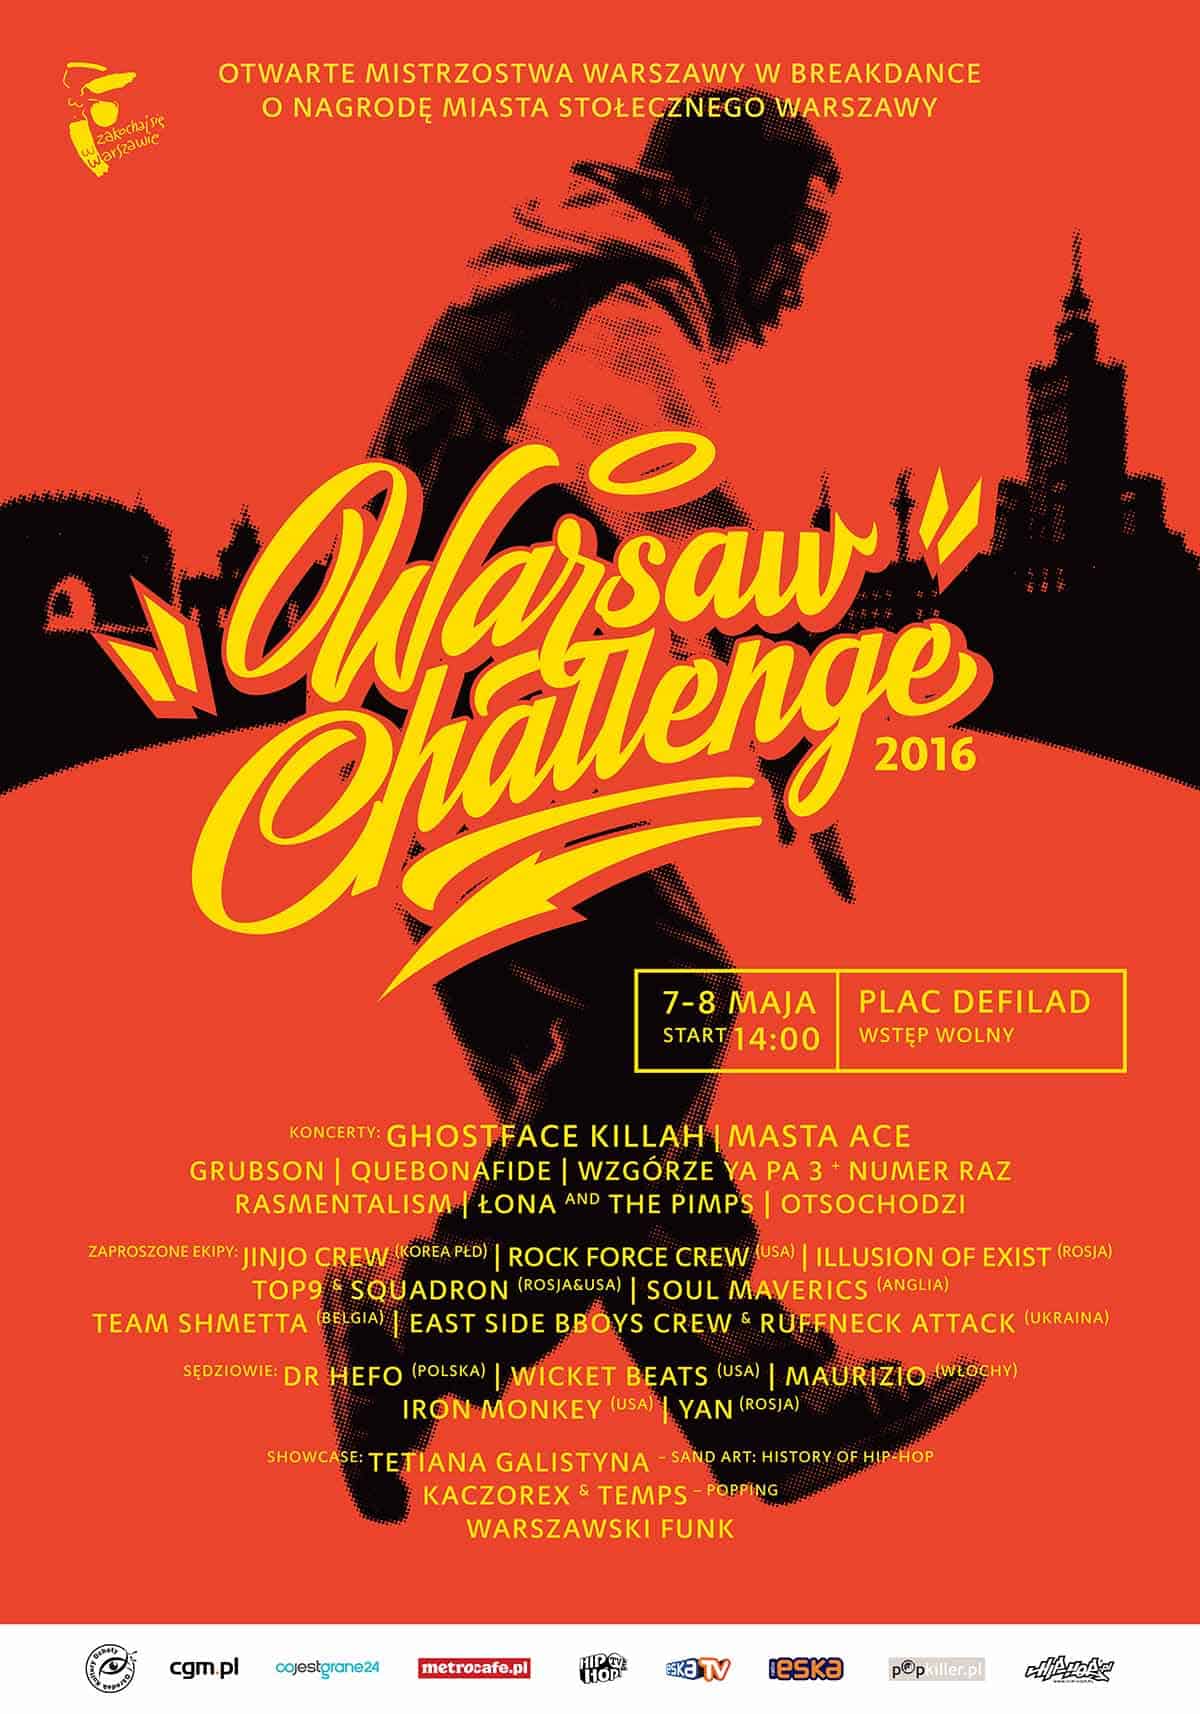 Strefa hip-hopowych atrakcji na Warsaw Challenge 2016!